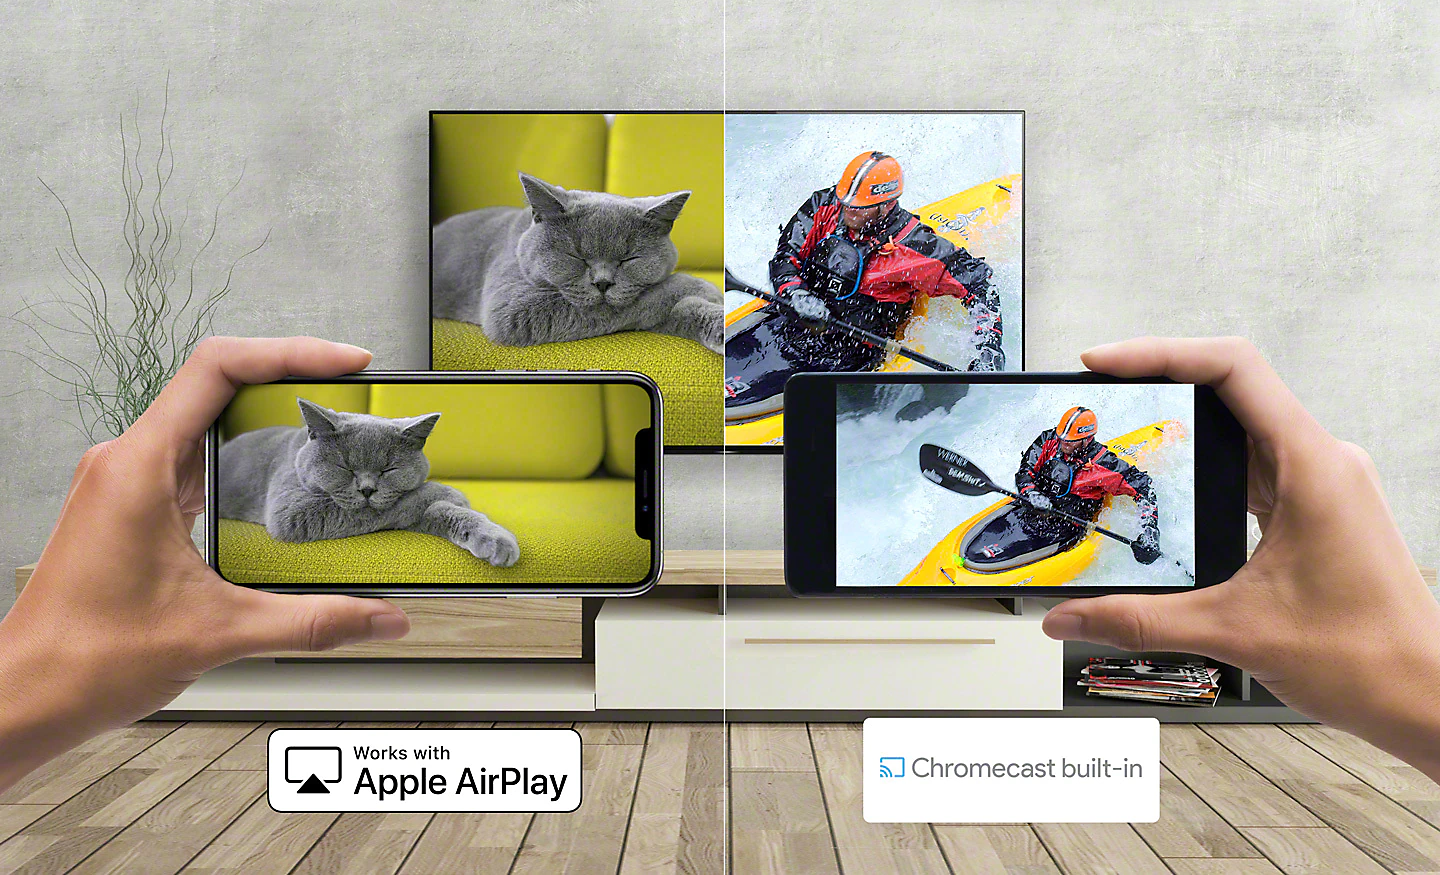 Bilder von Katze und Kanuist vom Smartphone auf den Fernseher übertragen